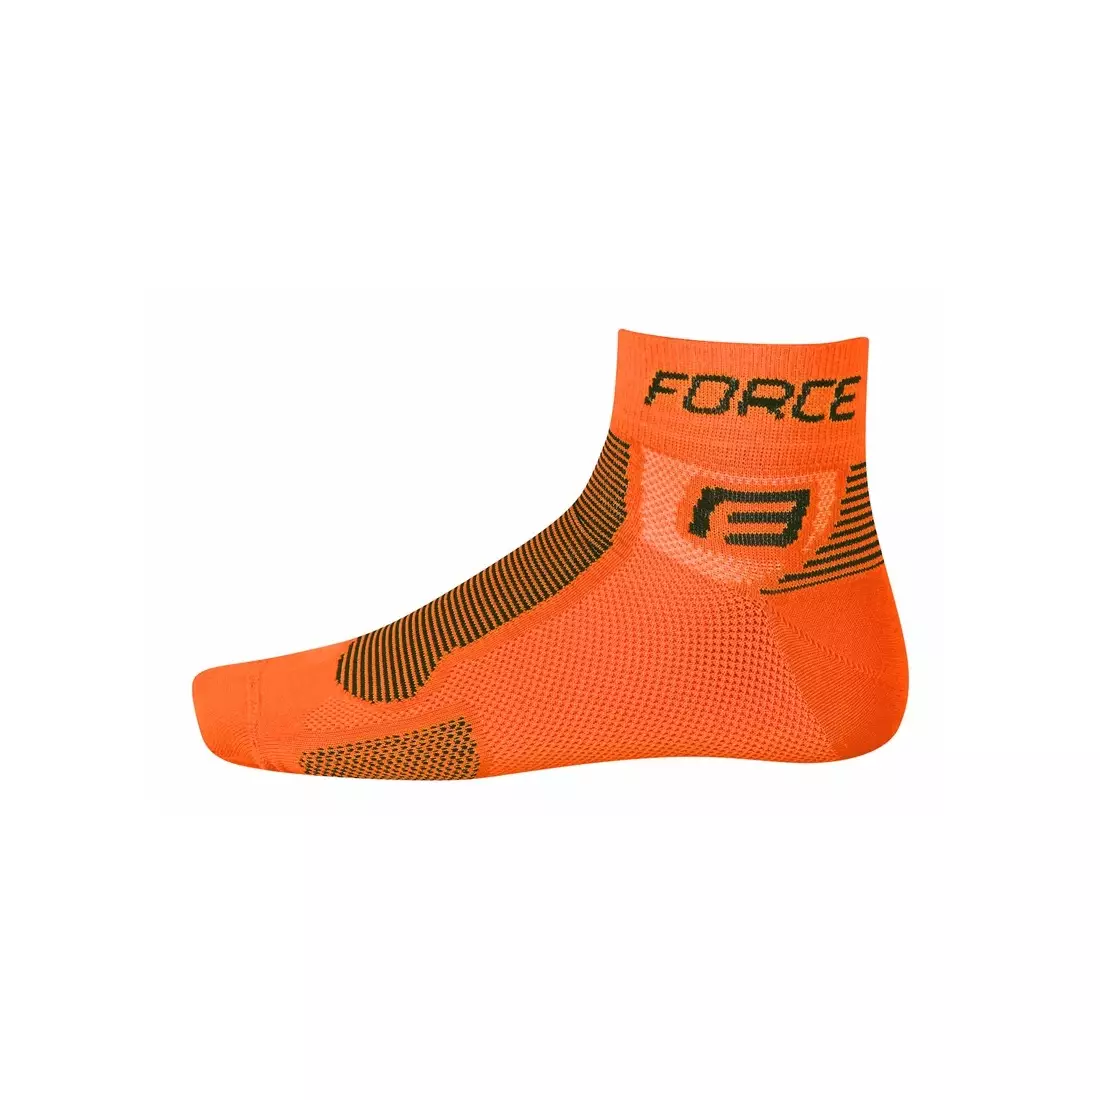 FORCE ponožky 9010, farba: oranžová